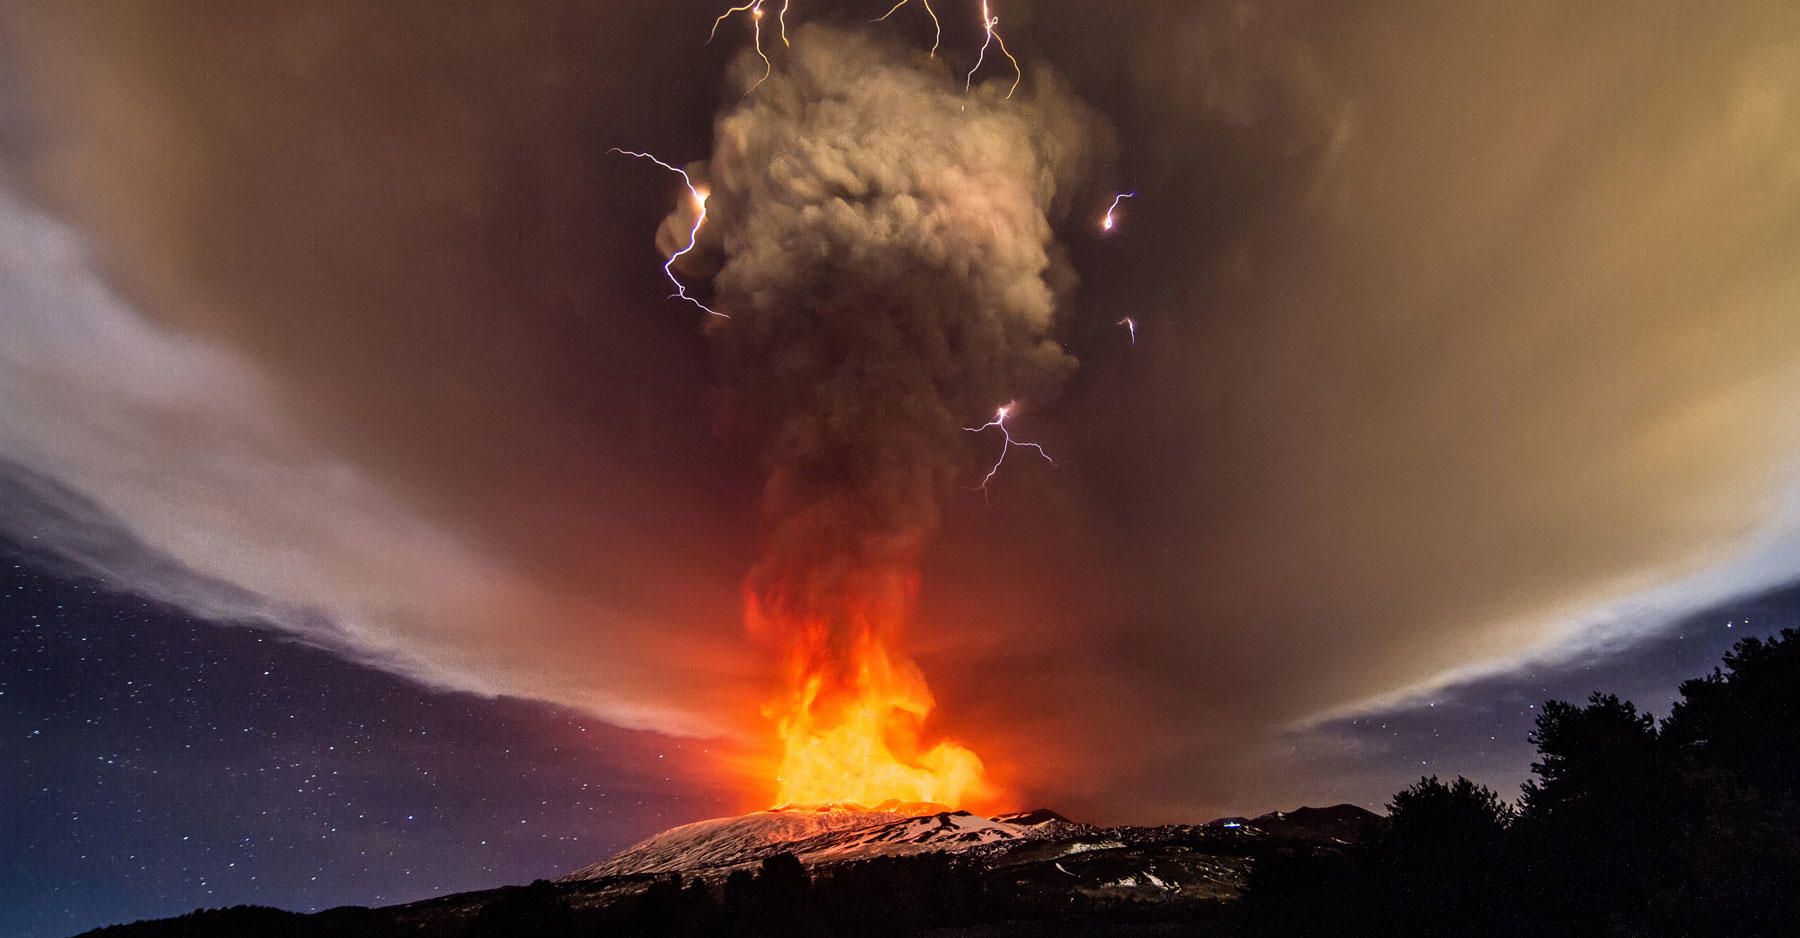 L’eruzione notturna dell’Etna regala un bellissimo spettacolo